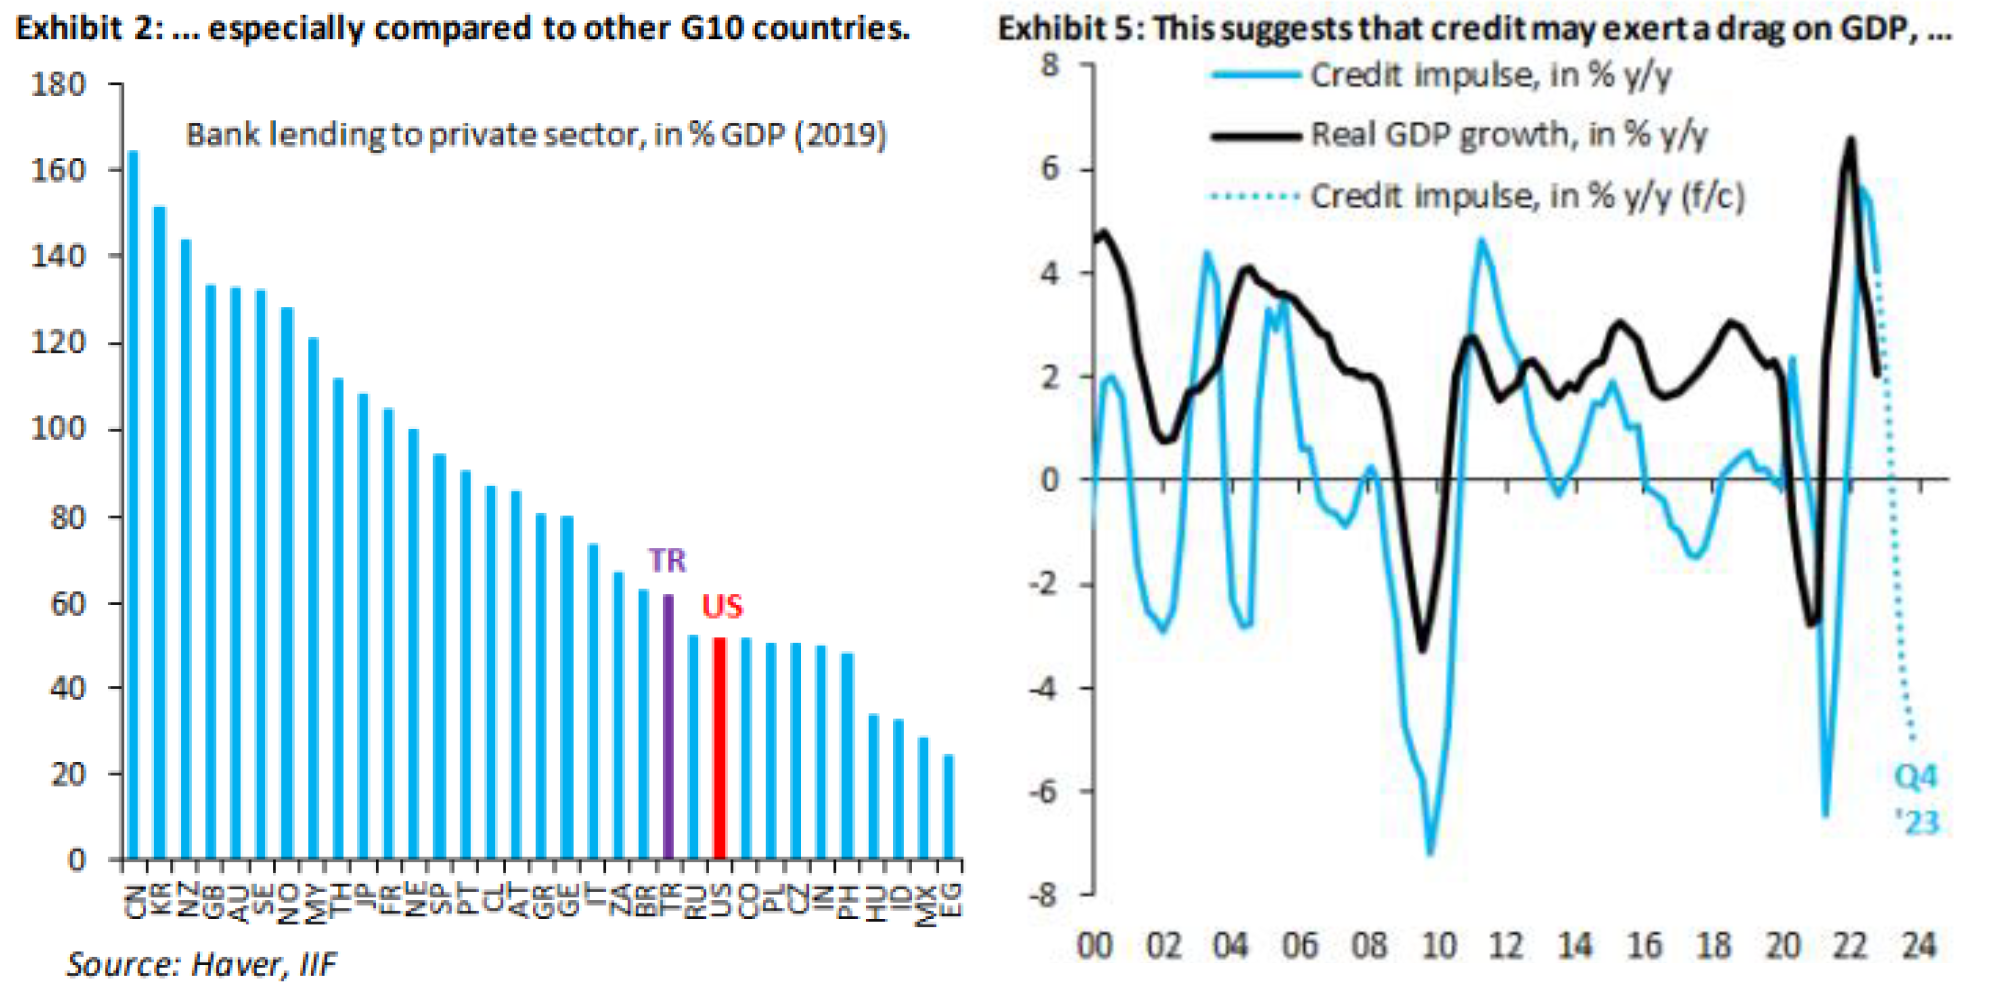 Bankovní úvěry a kreditní impulz pro HDP